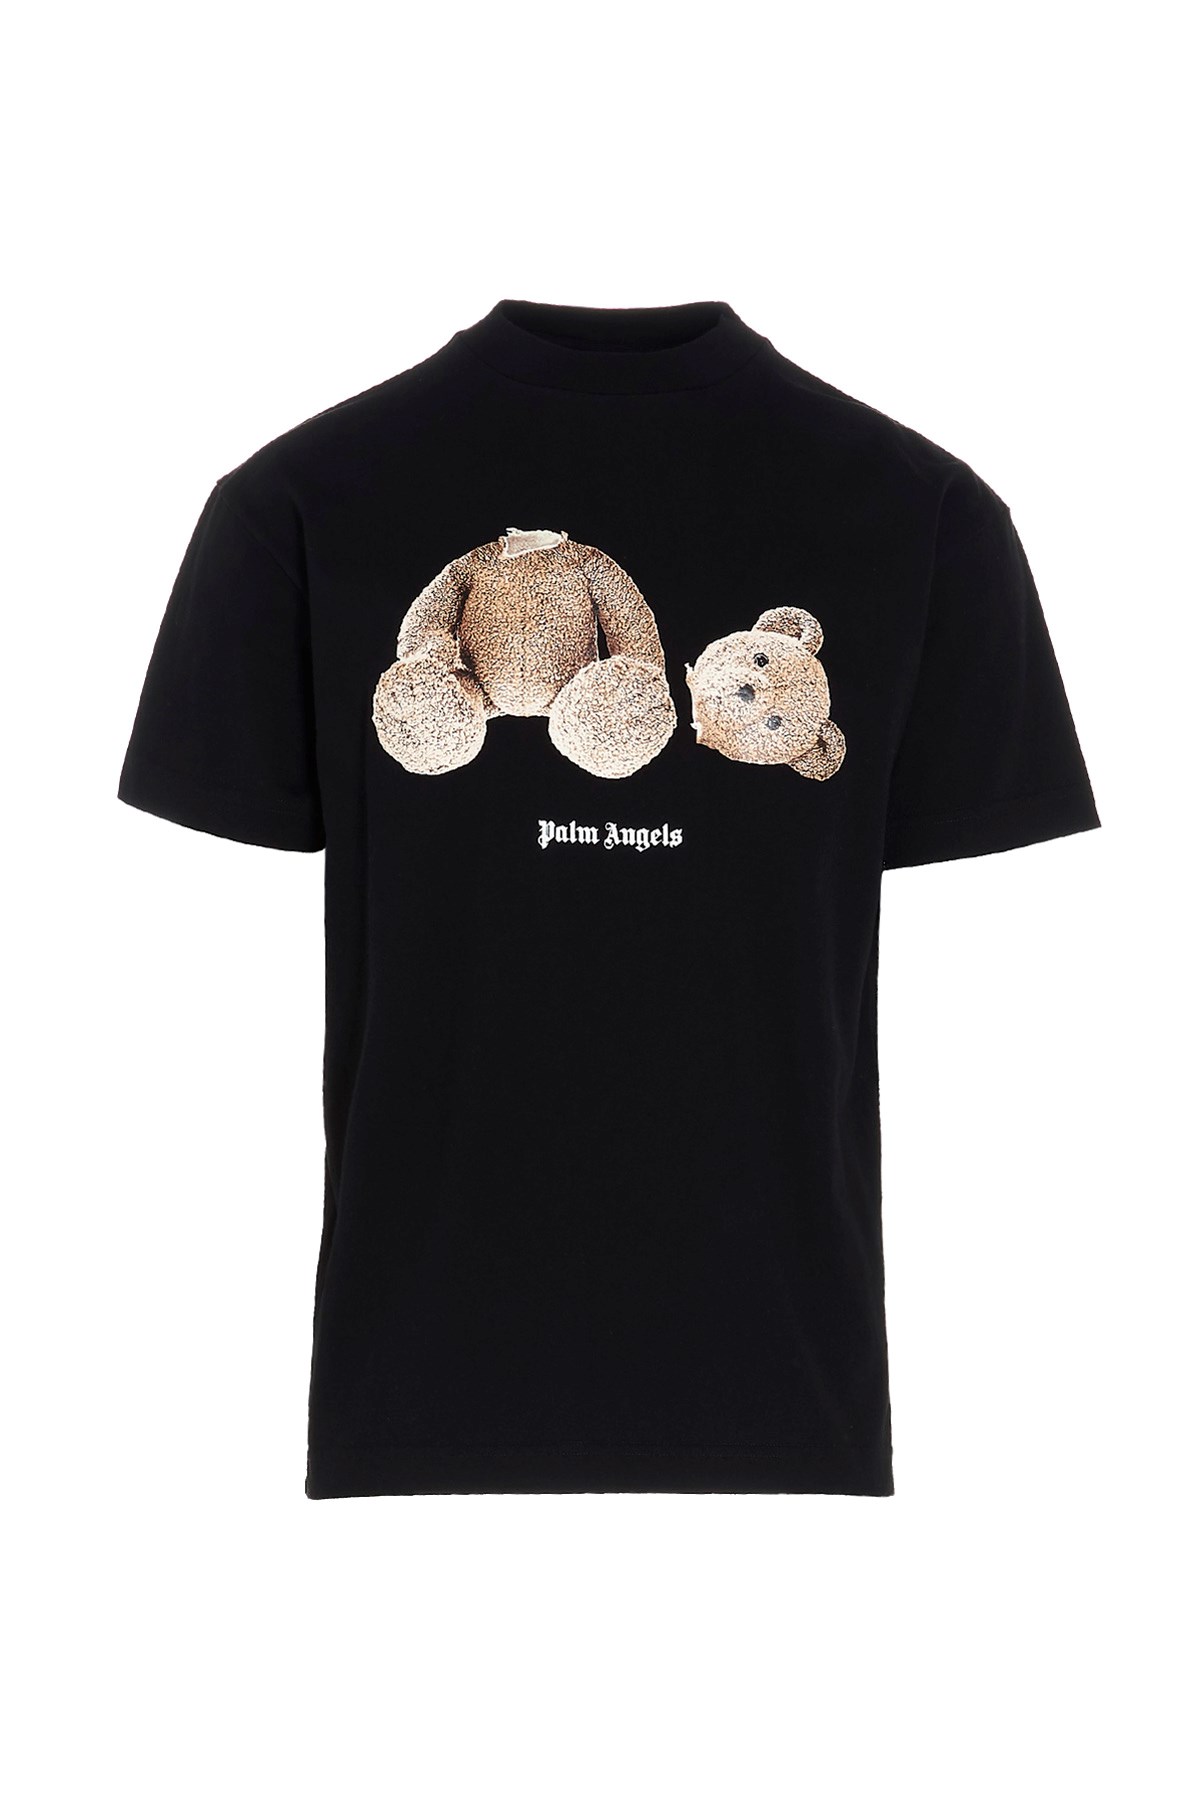 PALM ANGELS 'Bear Classic’ T-Shirt